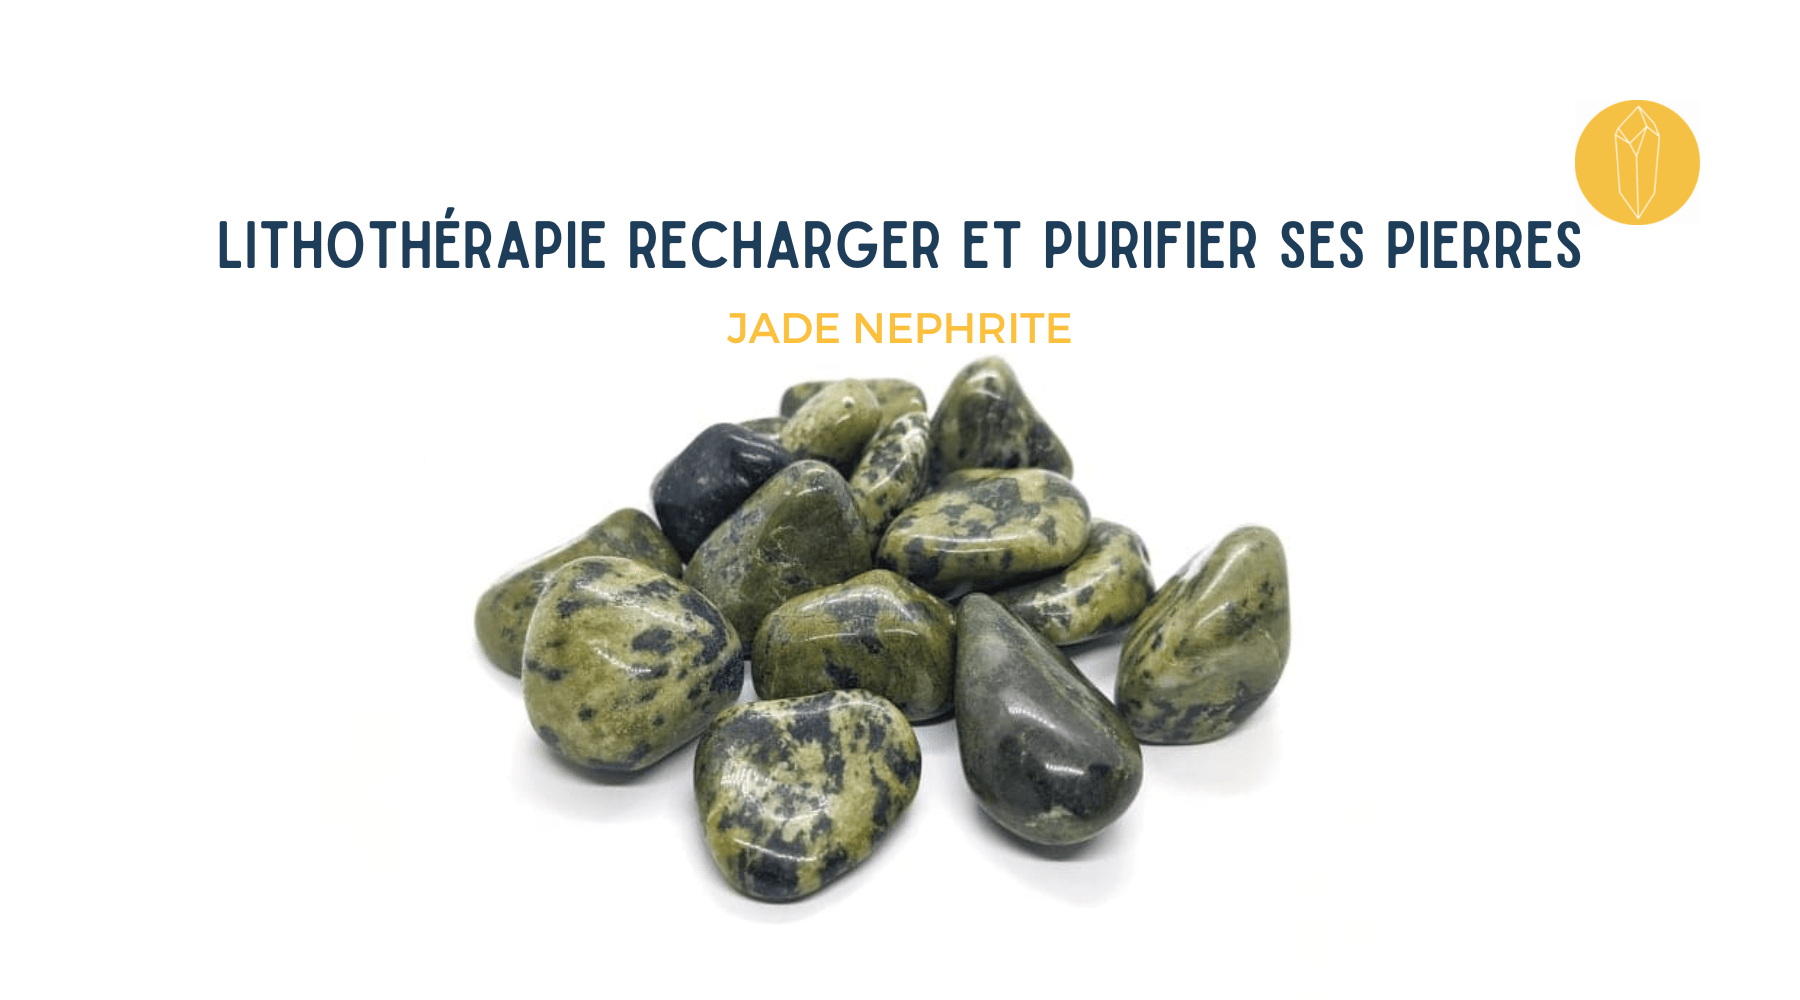 jade néphrite rechargement et purification de la pierre